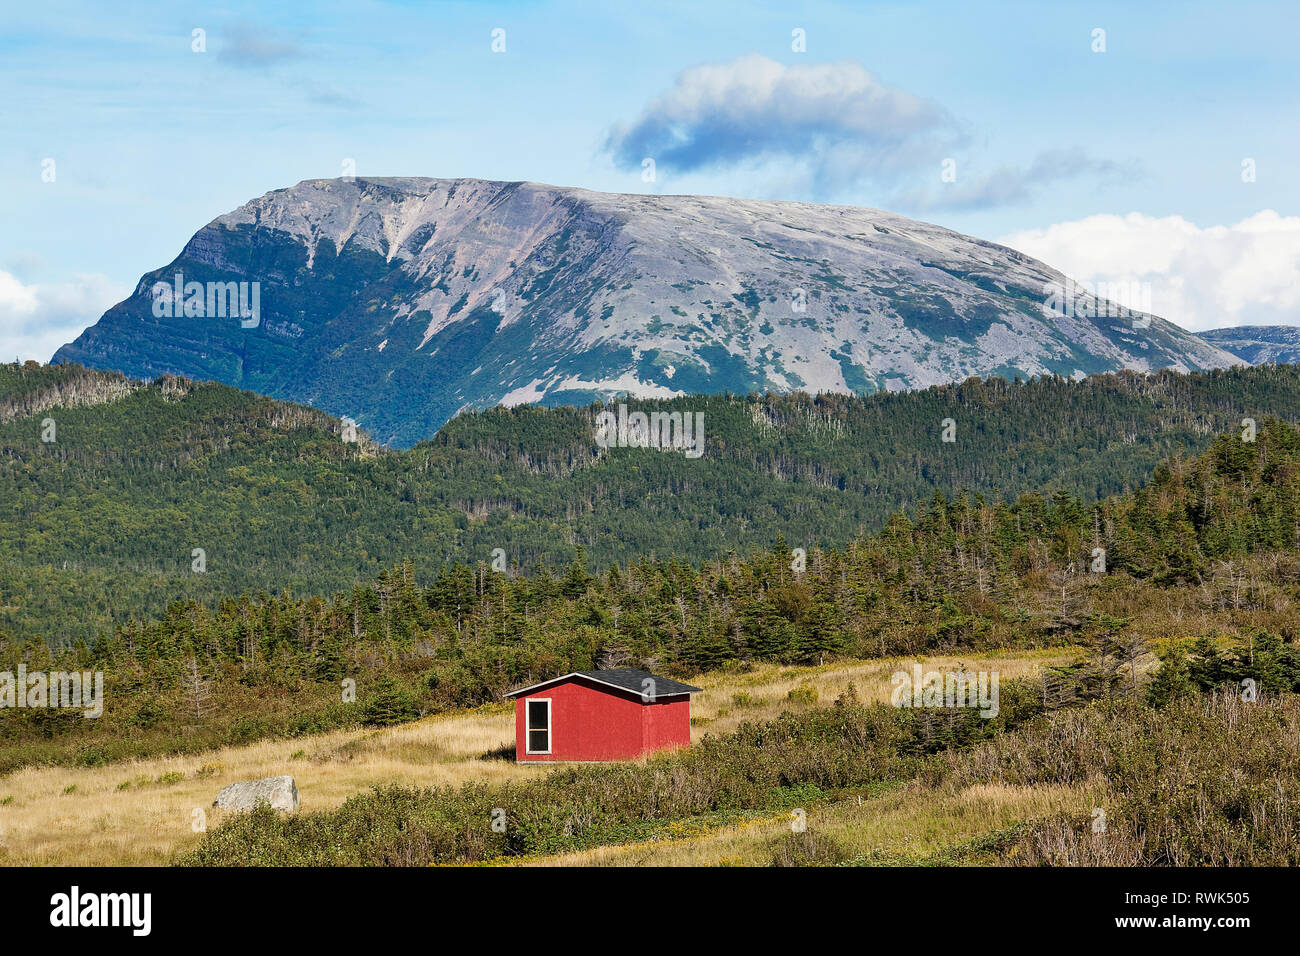 Abri de rouge dans un champ avec le mont Gros-Morne en arrière-plan, le parc national du Gros-Morne, à Terre-Neuve, Canada Banque D'Images